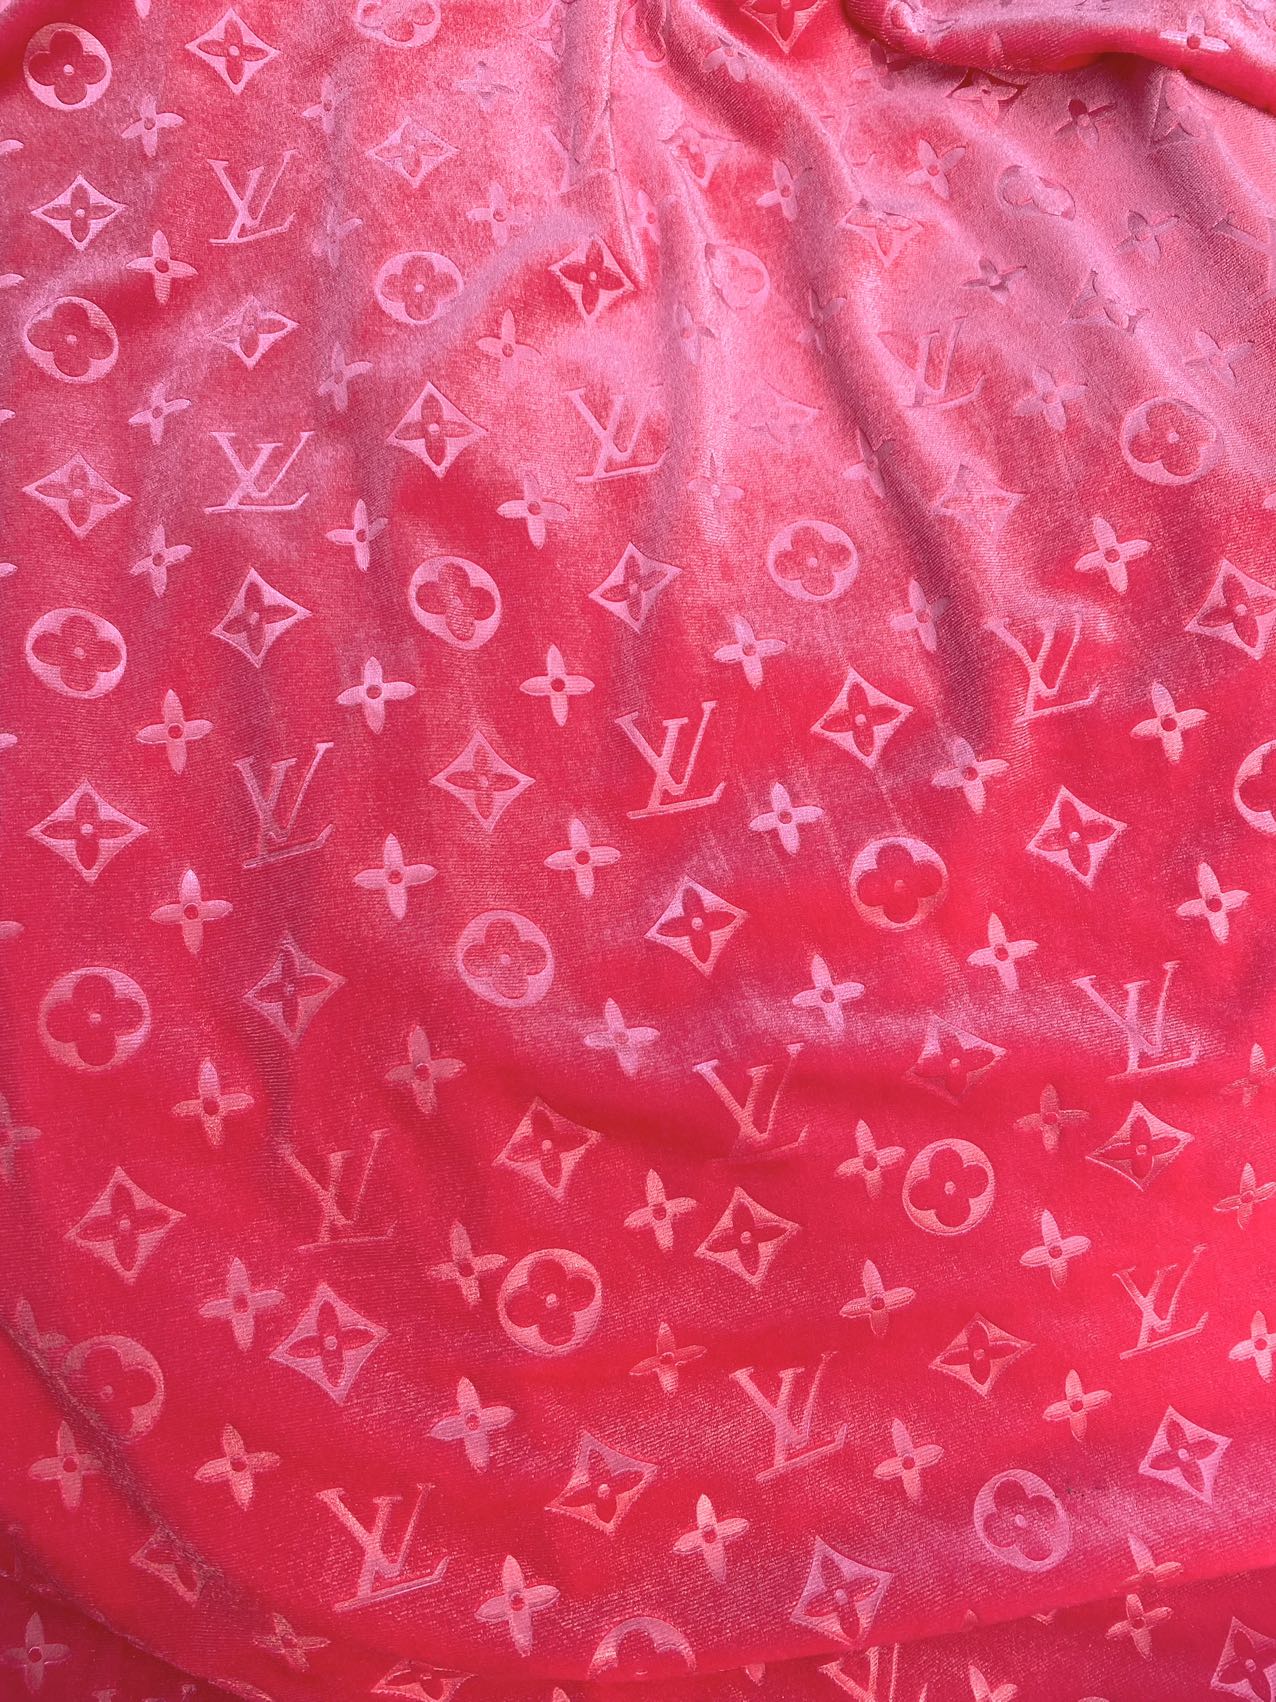 Girl Pink LV Velvet Fabric for Custom Sneakers Sewing Car Upholstery